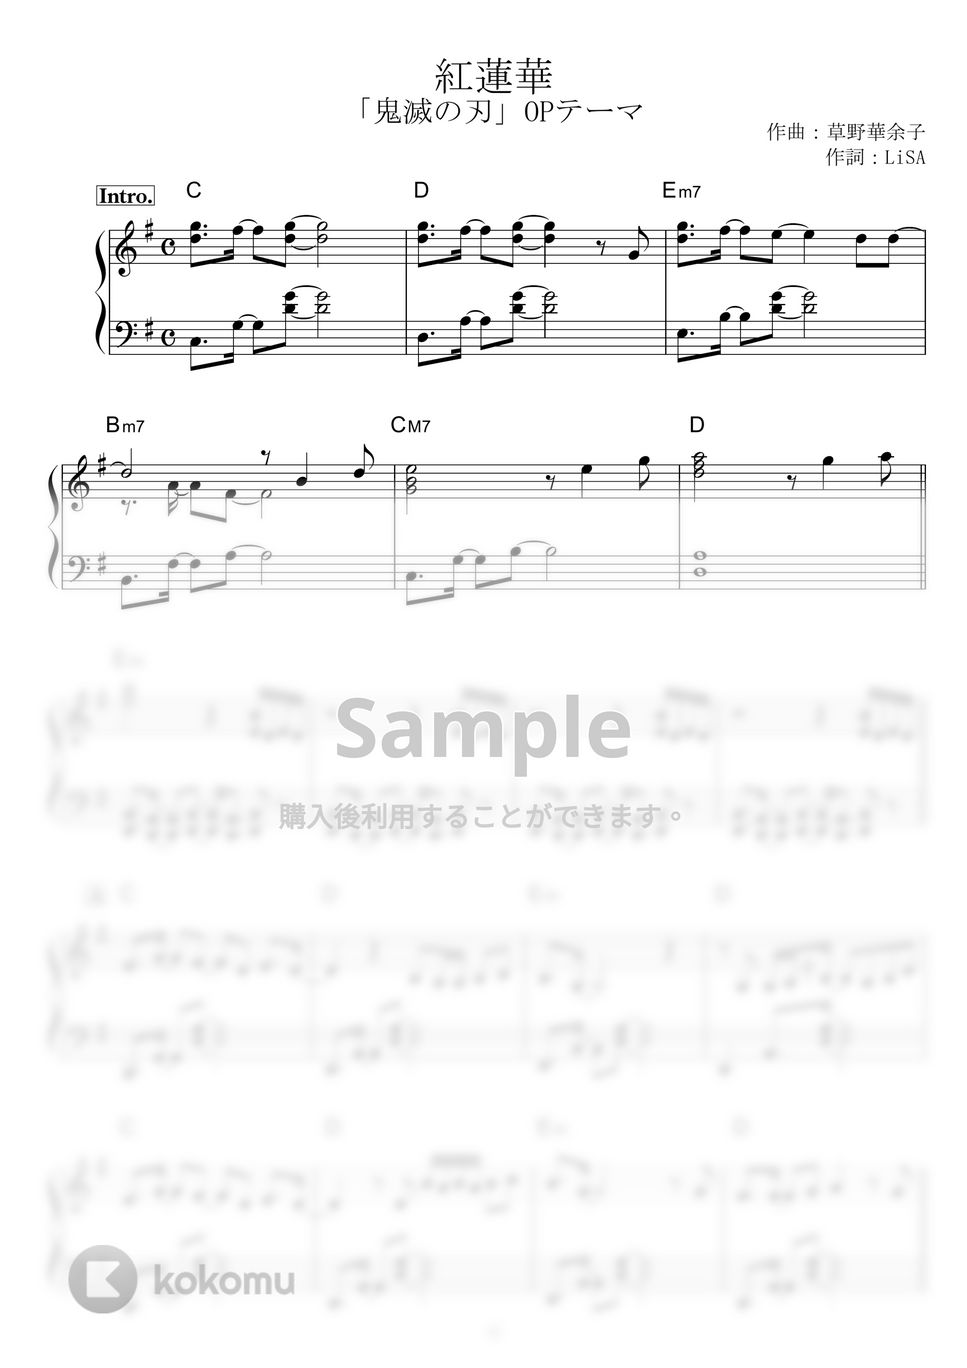 LiSA - 紅蓮華 by piano*score